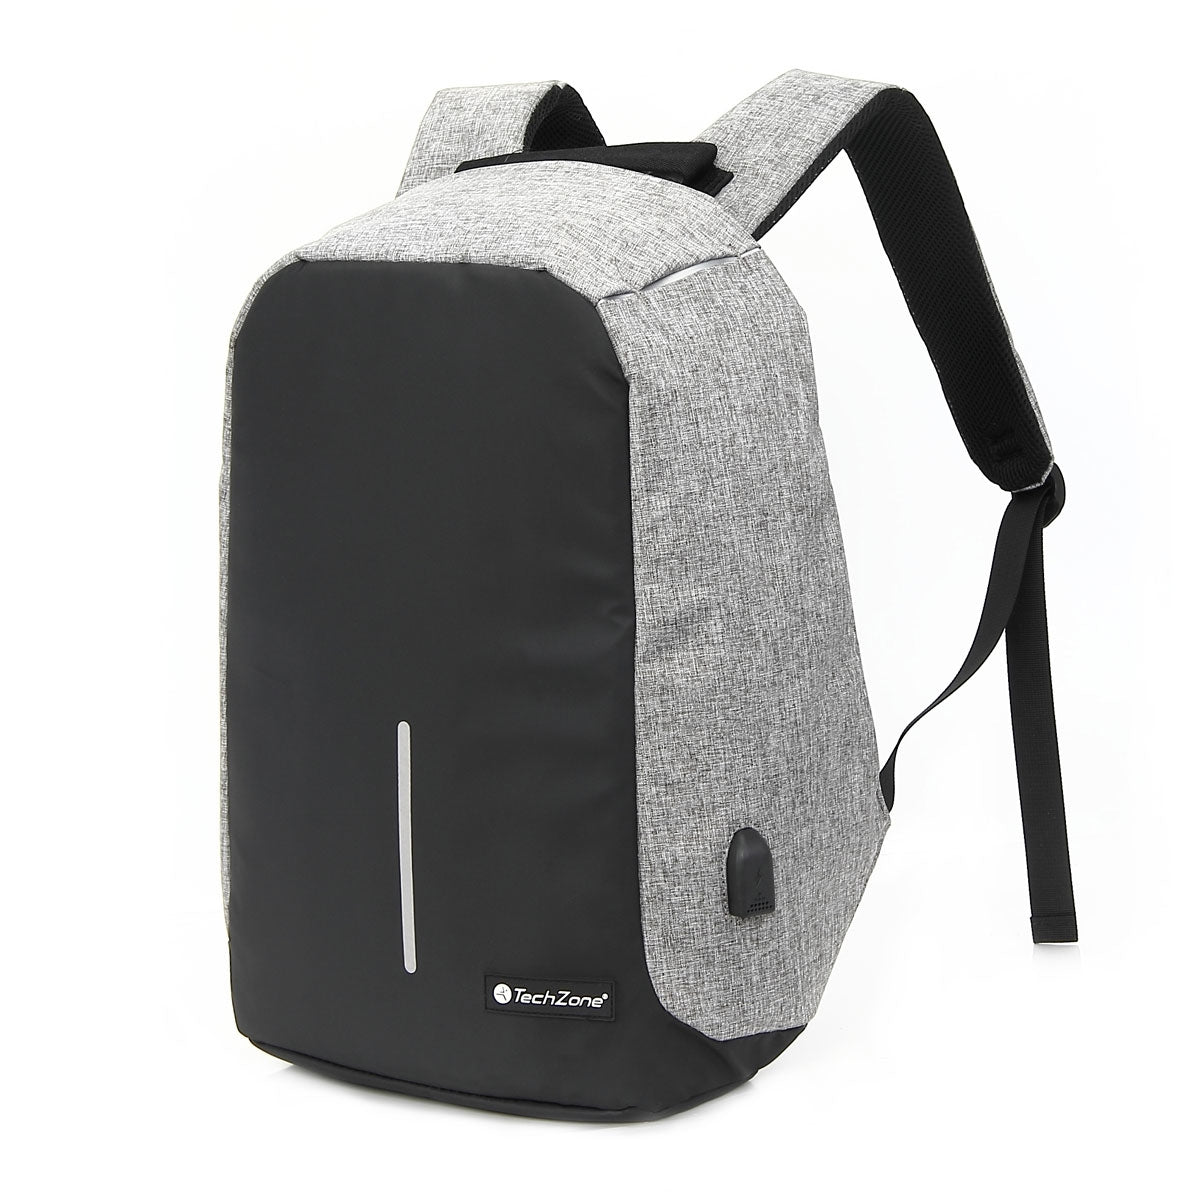 Mochila Antirrobo Techzone Tz18Lbp02 Backpack Gris Poliéster Garantía Ilimitada De Por Vida Cierres Autorreparables Laptop 17 Pulgadas